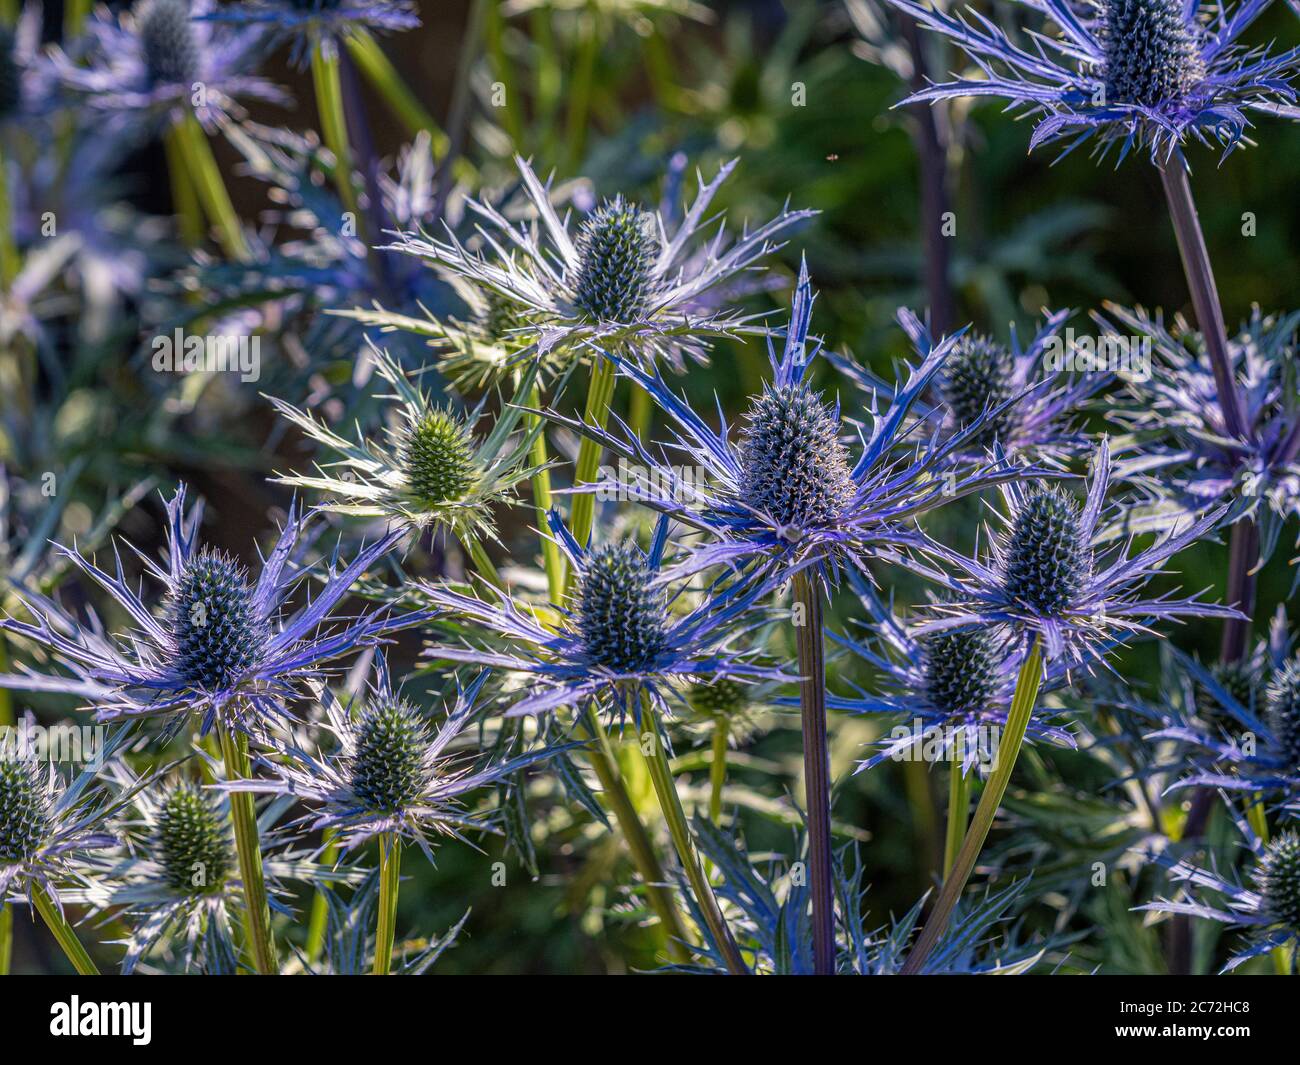 Spiky blaue Blumen von Eryngium wachsen in einem Garten. Stockfoto